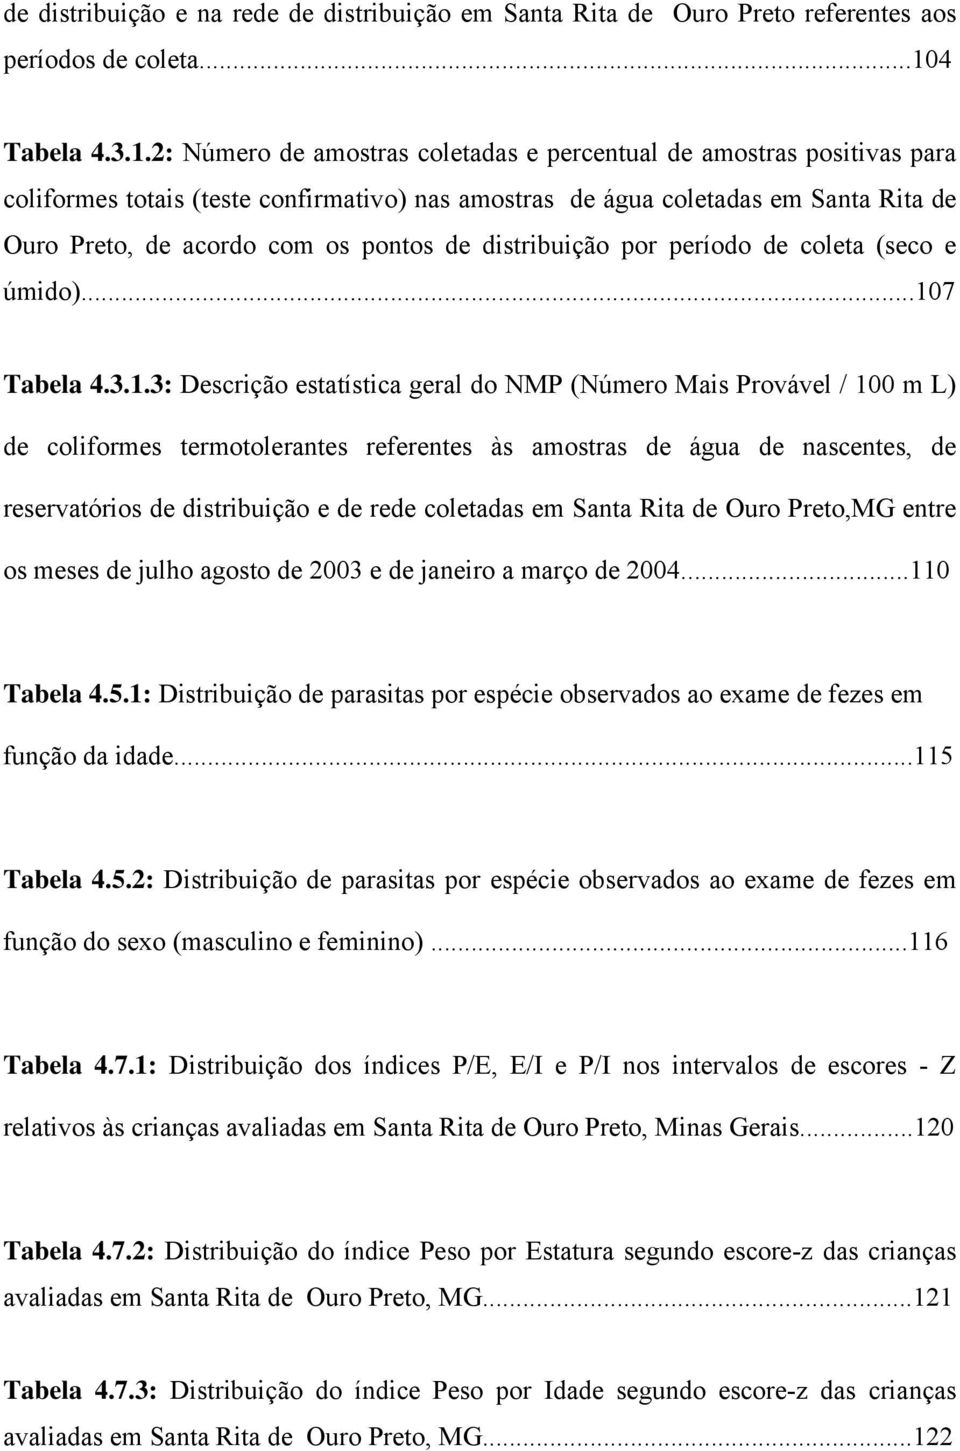 2: Número de amostras coletadas e percentual de amostras positivas para coliformes totais (teste confirmativo) nas amostras de água coletadas em Santa Rita de Ouro Preto, de acordo com os pontos de